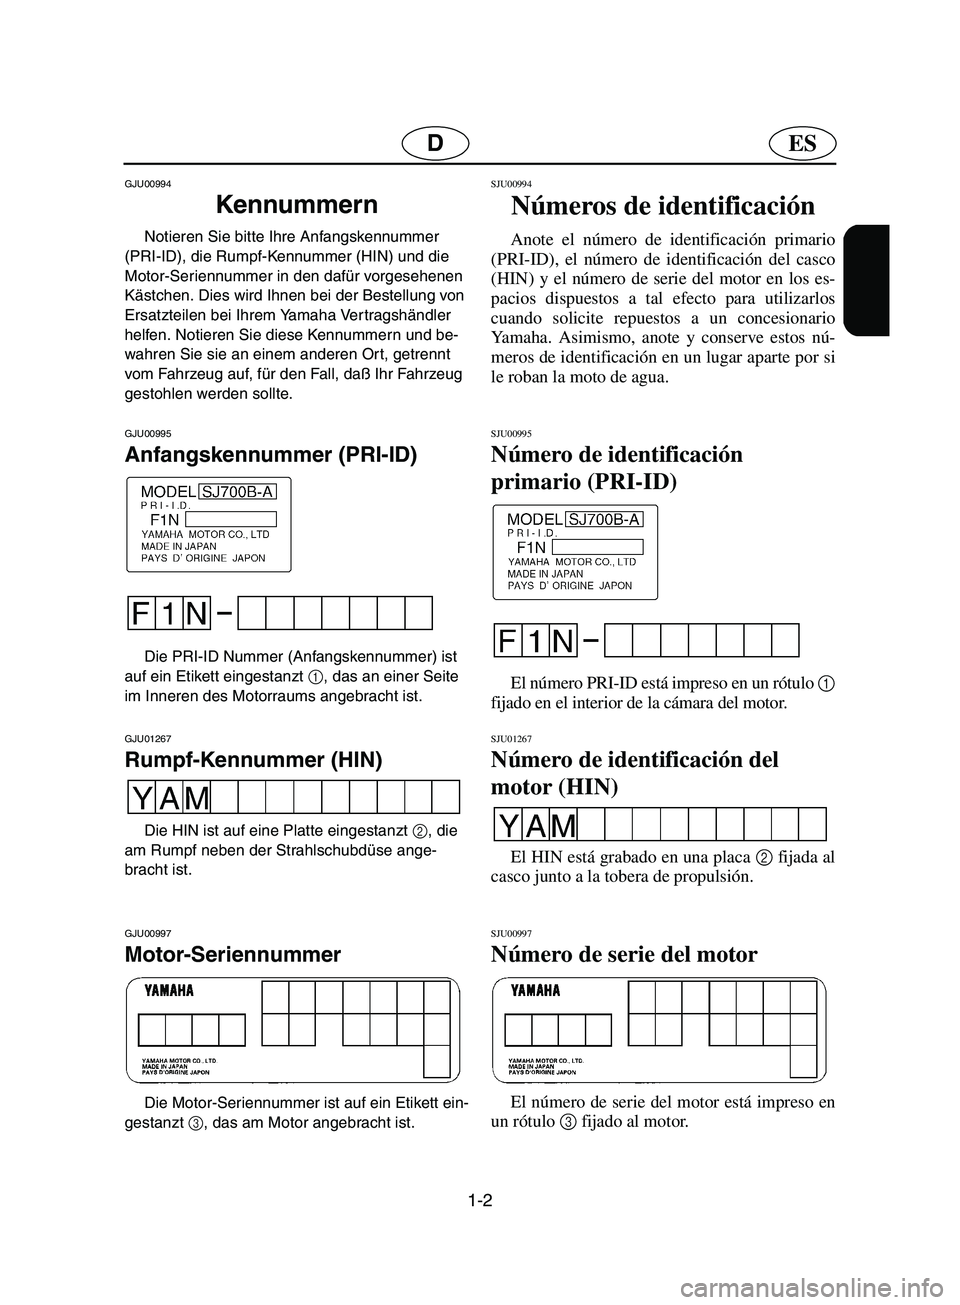 YAMAHA SUPERJET 2002  Manuale de Empleo (in Spanish) 1-2
ESD
GJU00994 
Kennummern  
Notieren Sie bitte Ihre Anfangskennummer 
(PRI-ID), die Rumpf-Kennummer (HIN) und die 
Motor-Seriennummer in den dafür vorgesehenen 
Kästchen. Dies wird Ihnen bei der 